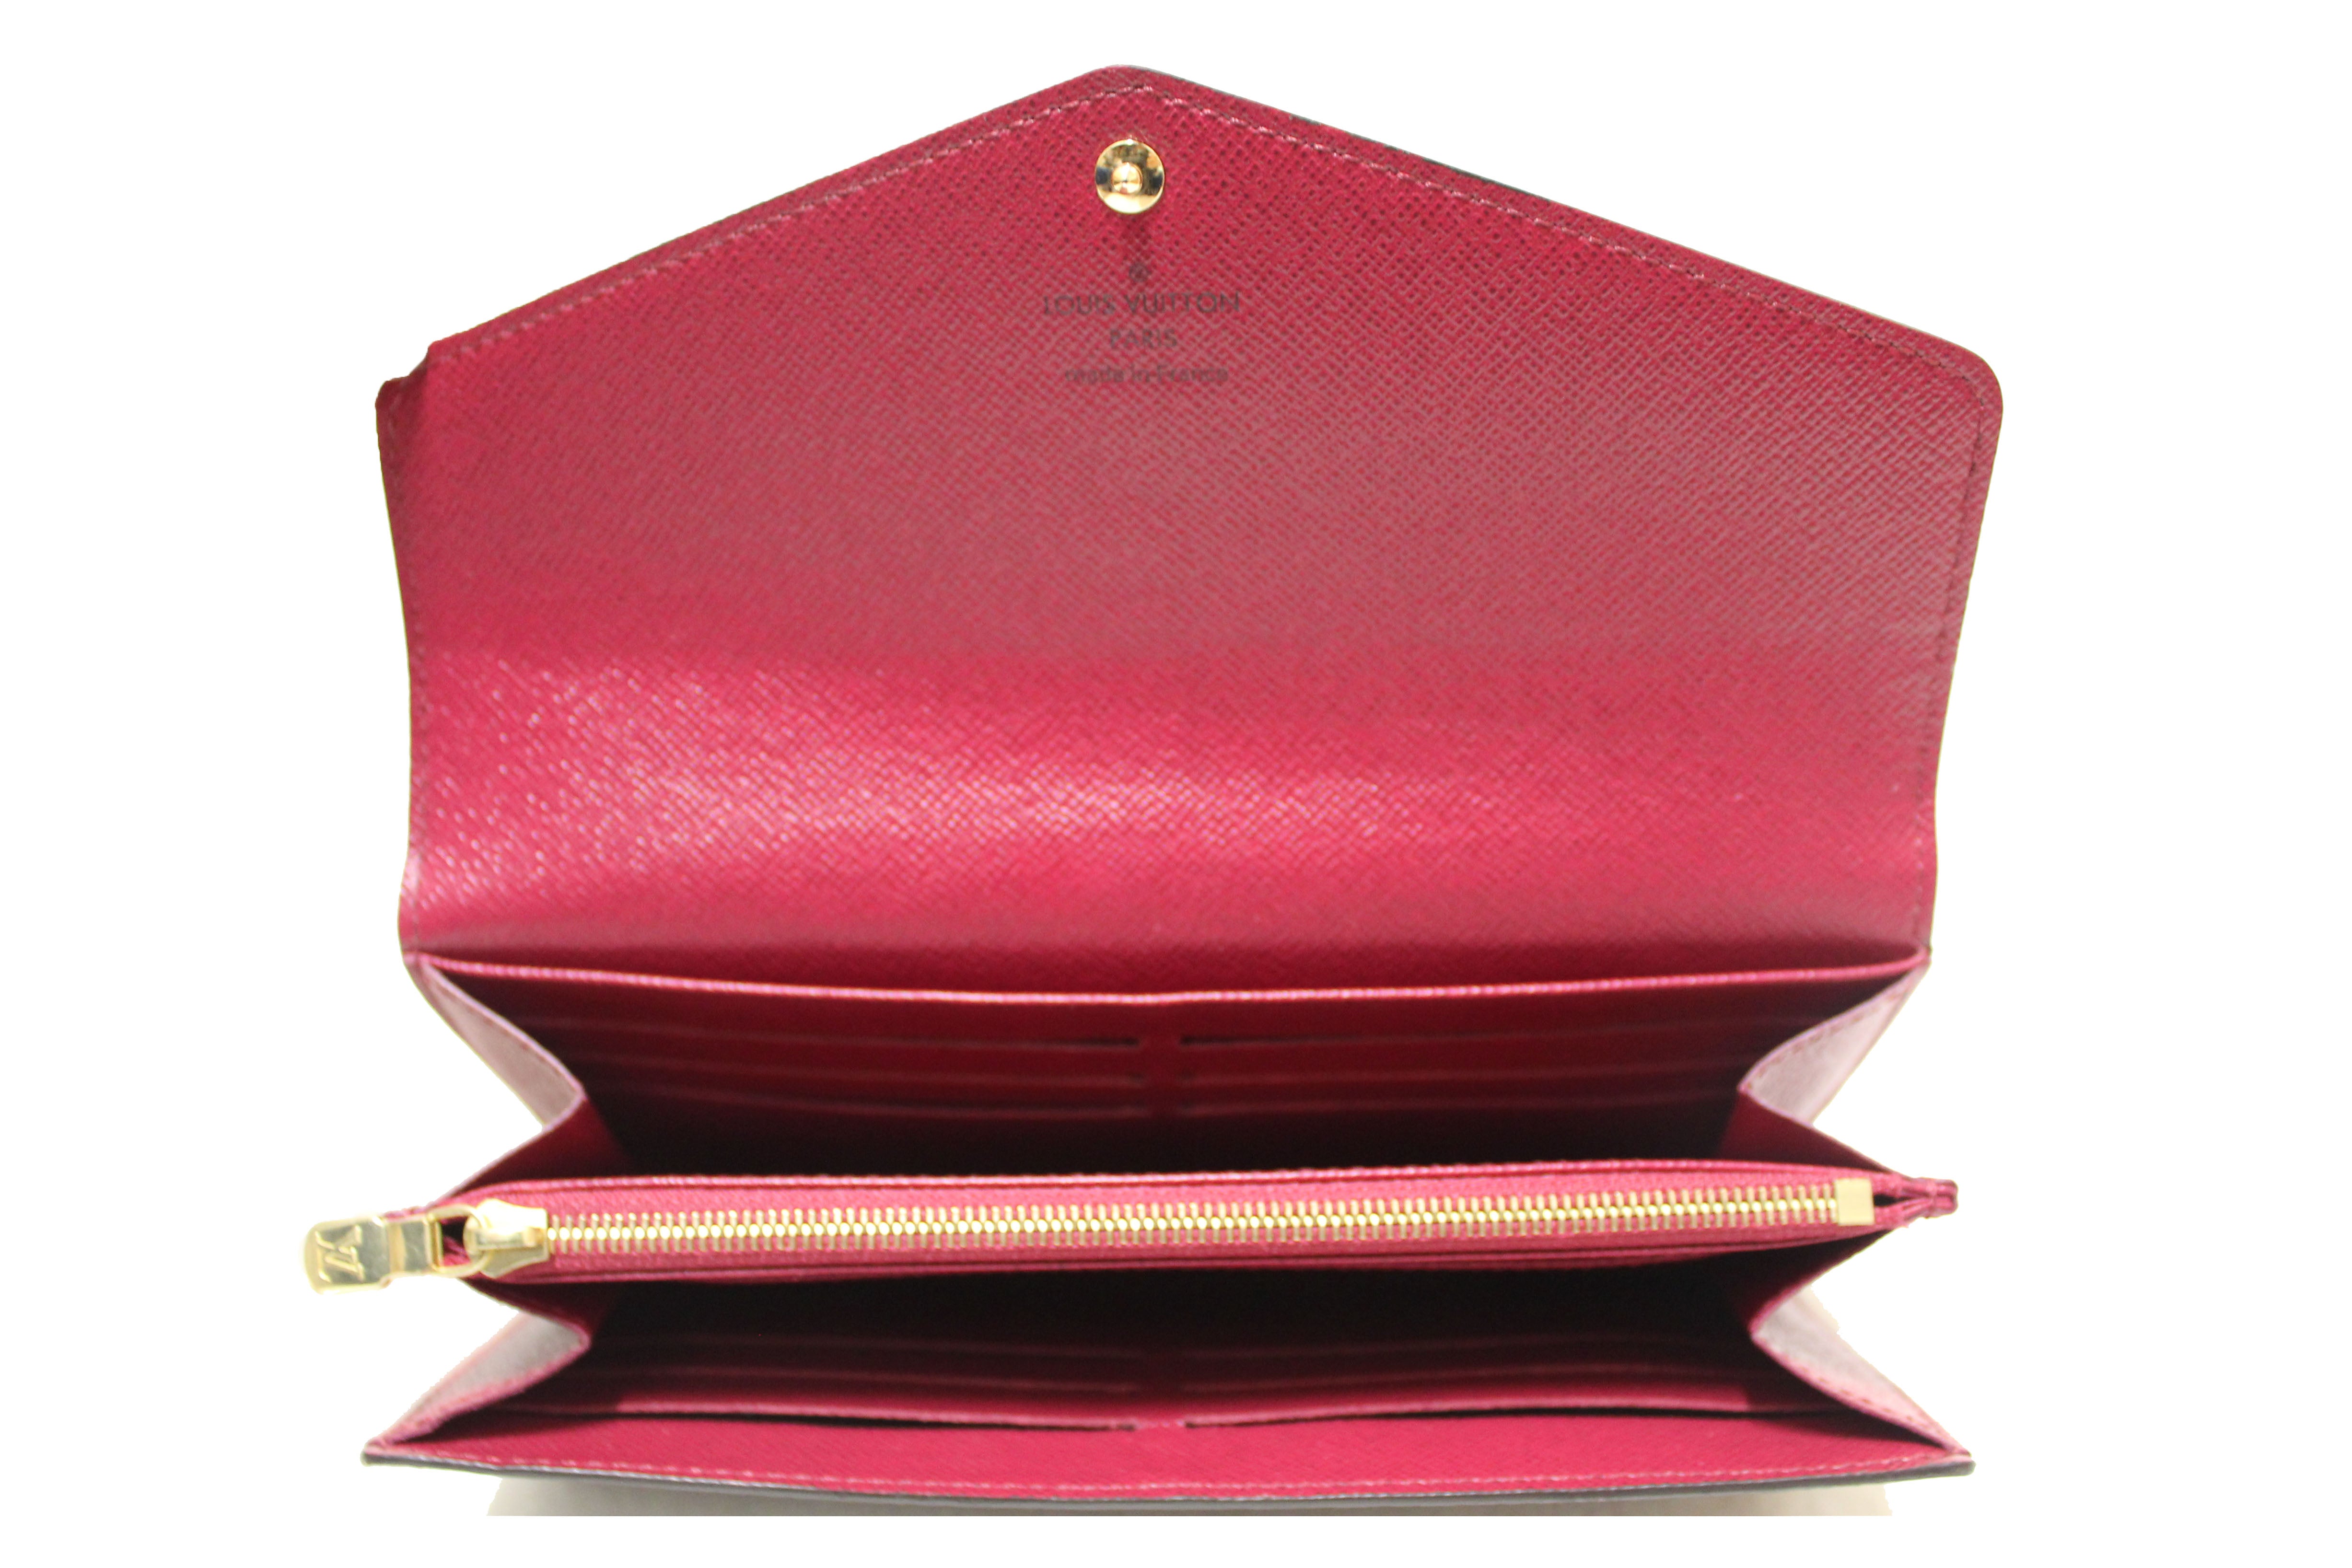 Louis Vuitton - Sarah Wallet - Monogram - Fuchsia - Women - Luxury